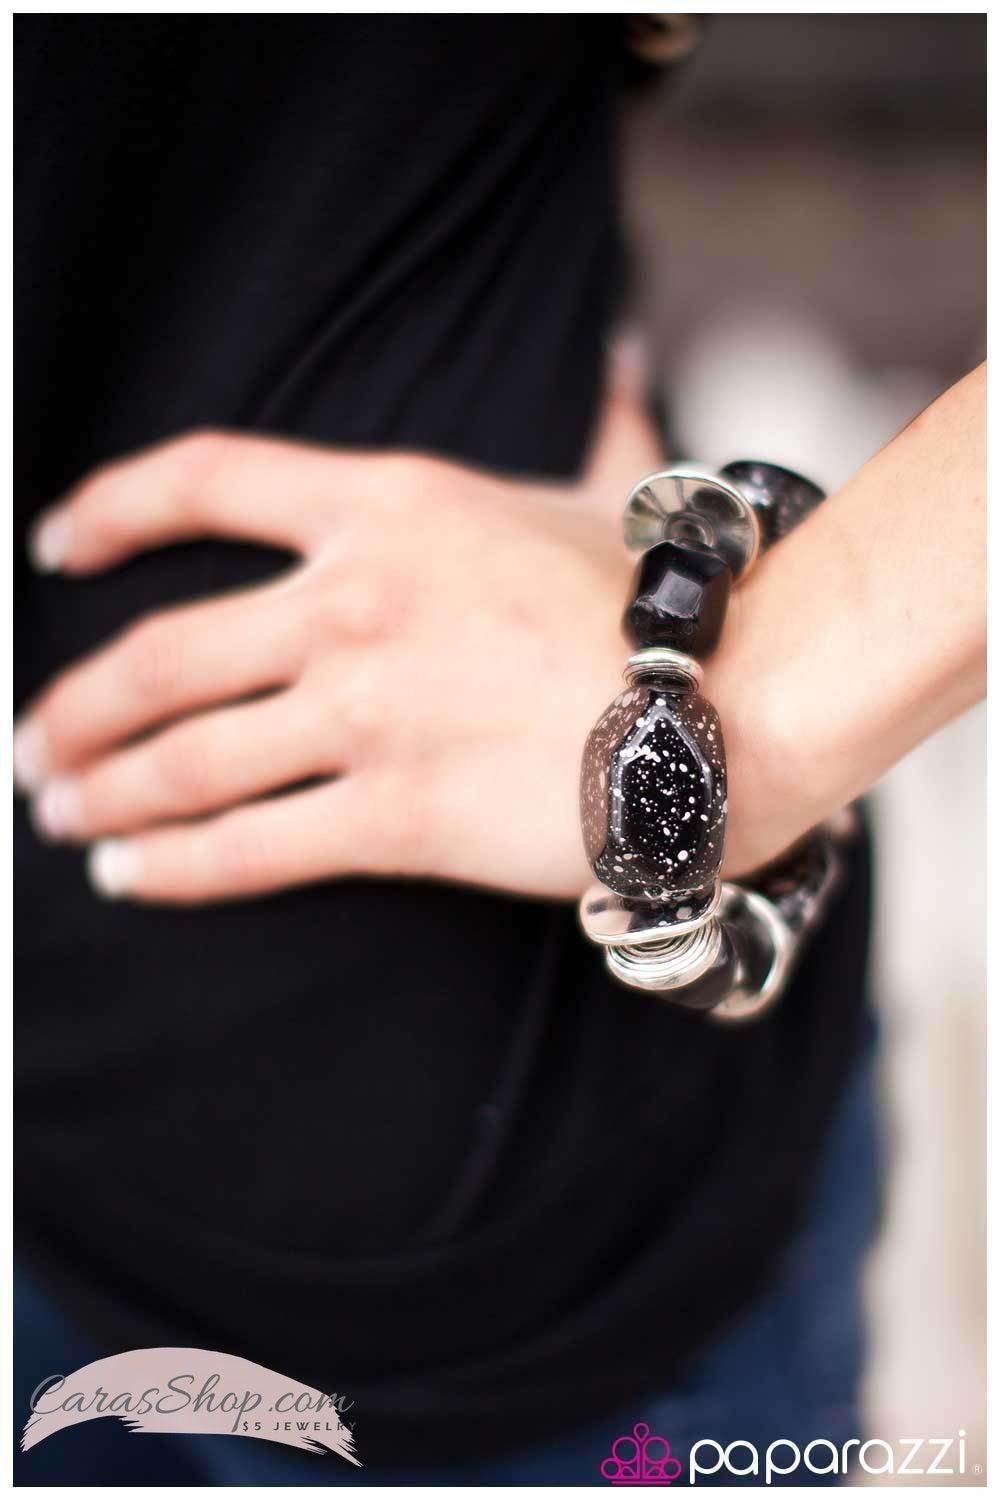 Glaze of Glory Black Chunky Bead Stretch Bracelet - Paparazzi Accessories- stylized on model -CarasShop.com - $5 Jewelry by Cara Jewels